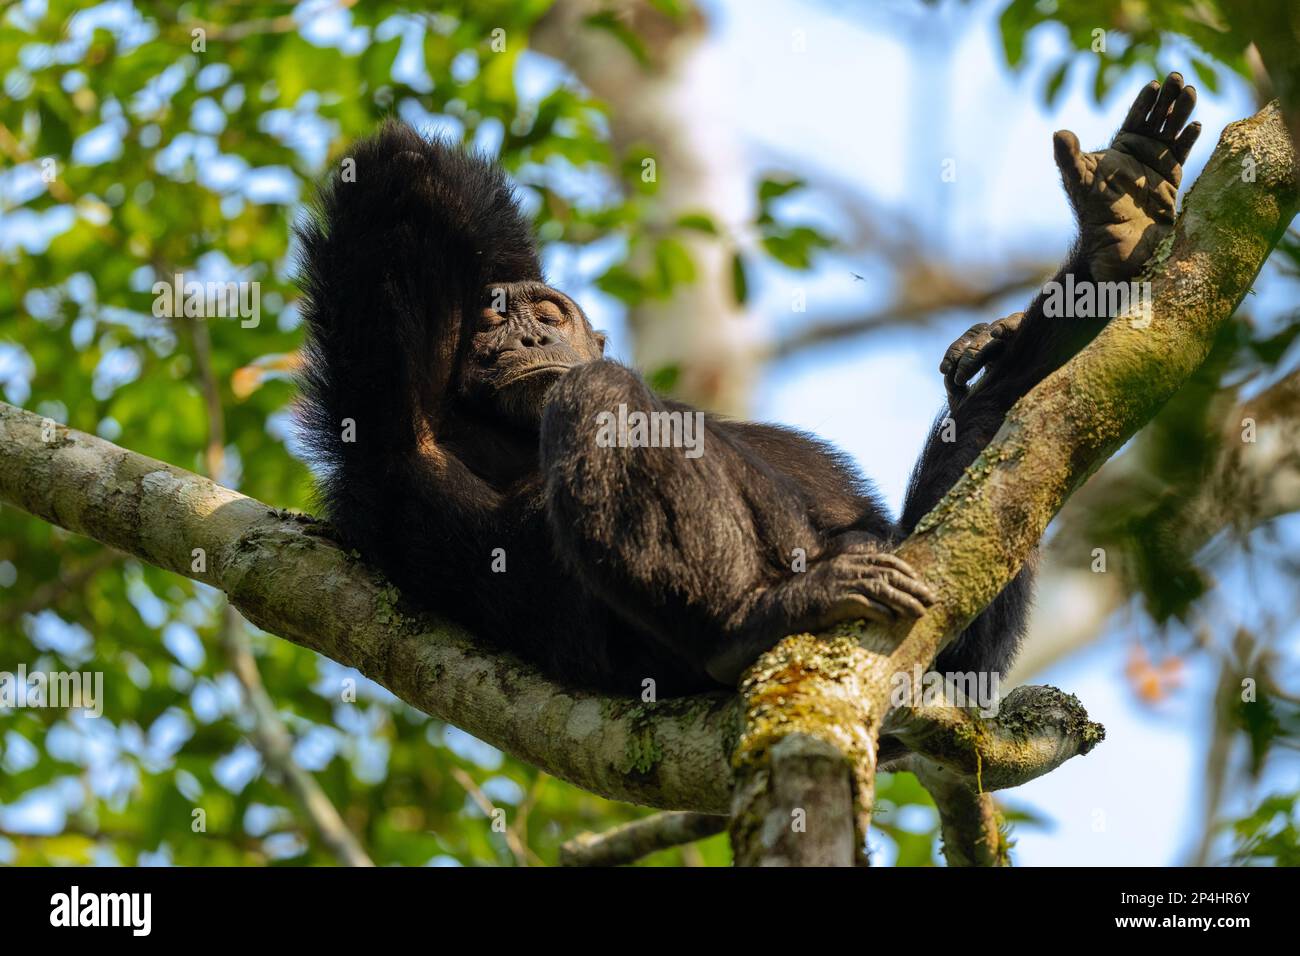 Chimpanzee chilling in a tree in Kibale national park uganda Stock Photo